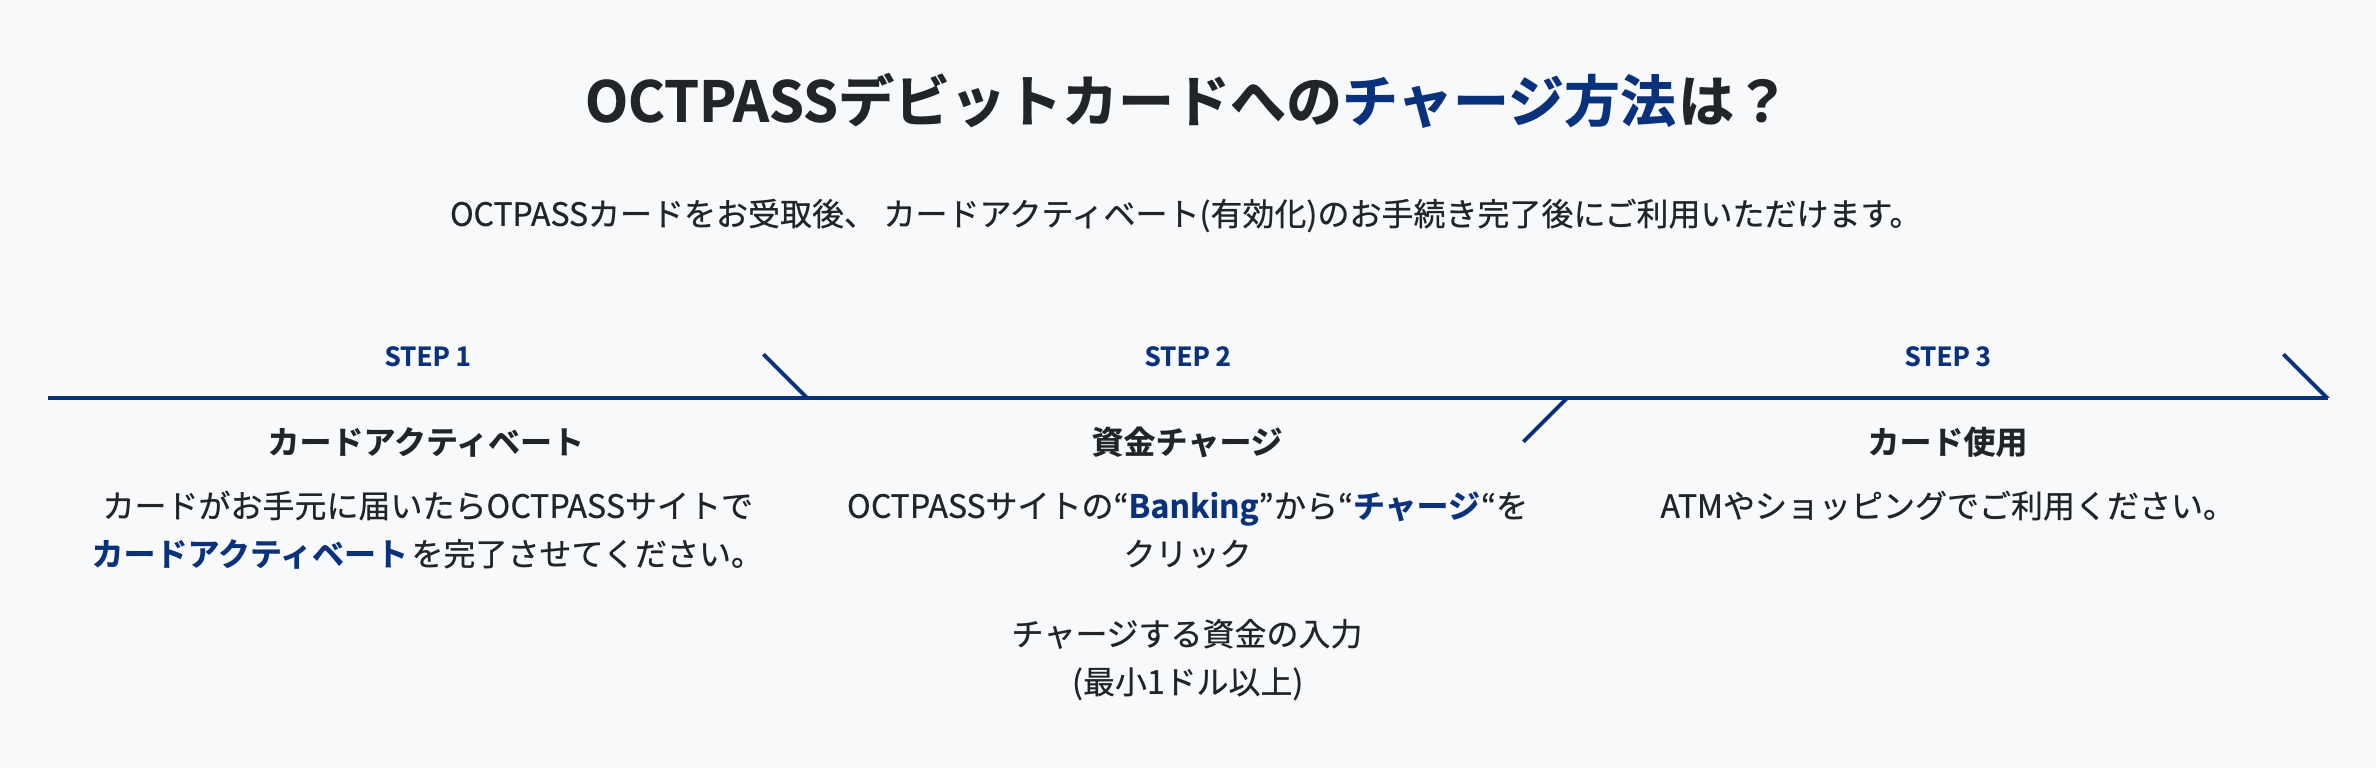 OCTPASSカードをお受取後、 カードアクティベート(有効化)のお手続き完了後にご利用いただけます。 STEP 1 カードアクティベート カードがお手元に届いたらOCTPASSサイトで カードアクティベートを完了させてください。 STEP 2 資金チャージ OCTPASSサイトの“Banking”から“チャージ“をクリック チャージする資金の入力 (最小1ドル以上) STEP 3 カード使用 ATMやショッピングでご利用ください。